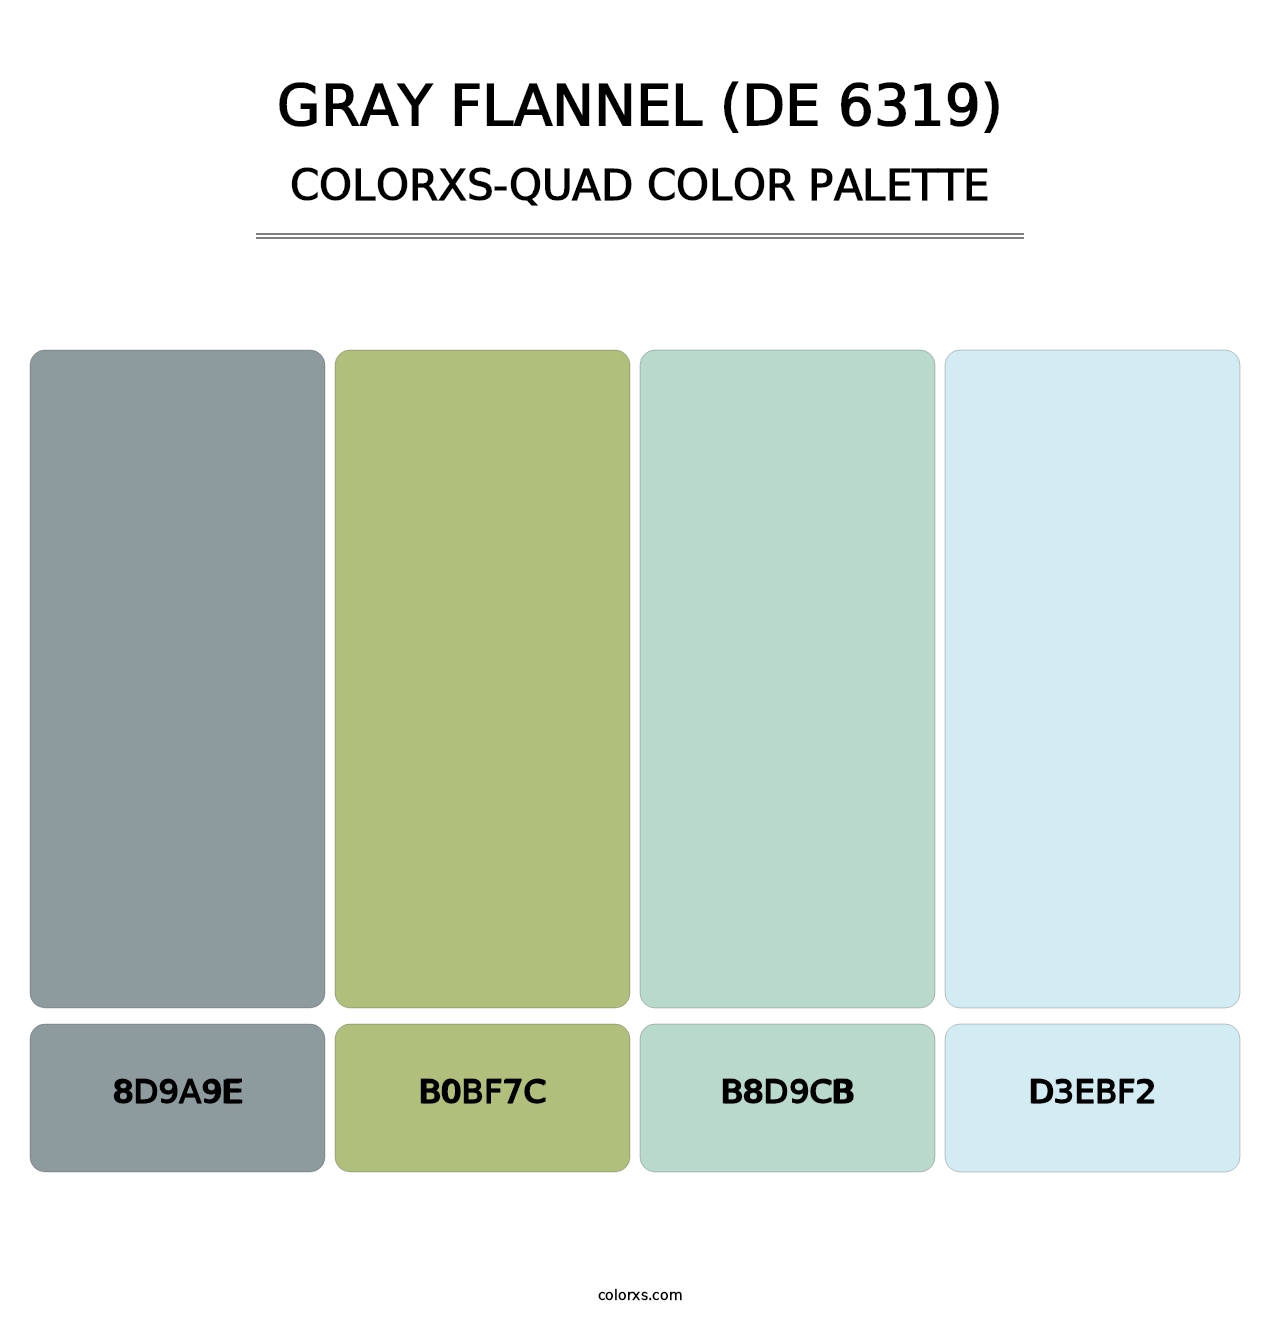 Gray Flannel (DE 6319) - Colorxs Quad Palette